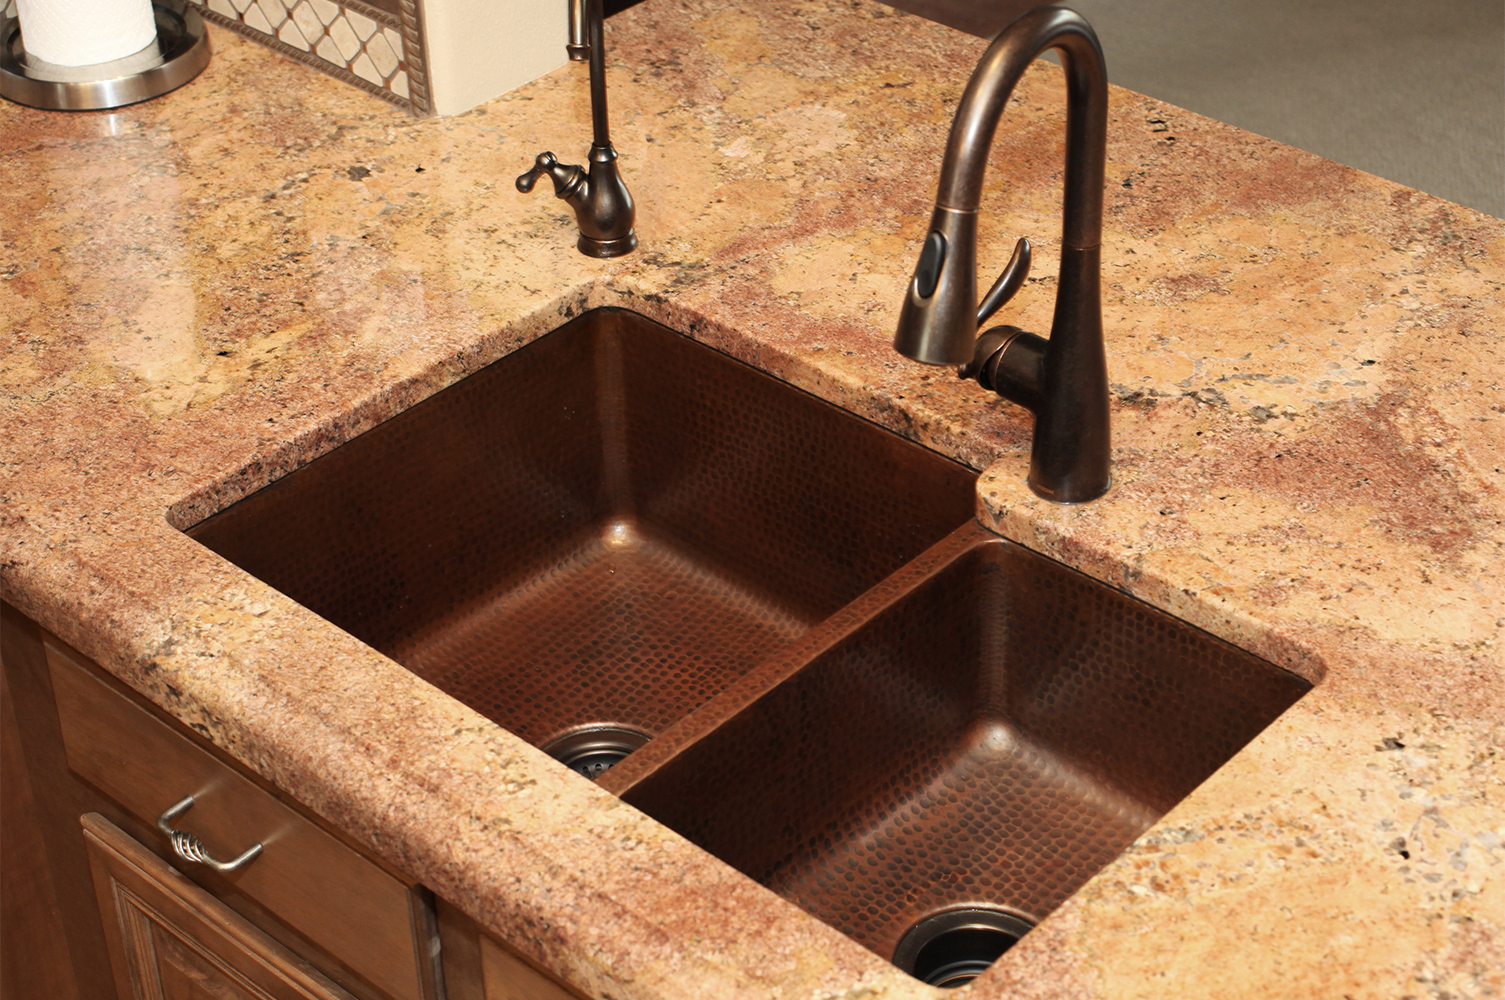 33&amp;quot; Hammered Copper 6040 Double Basin Kitchen Sink dedans Hammered Undermount Kitchen Sink 